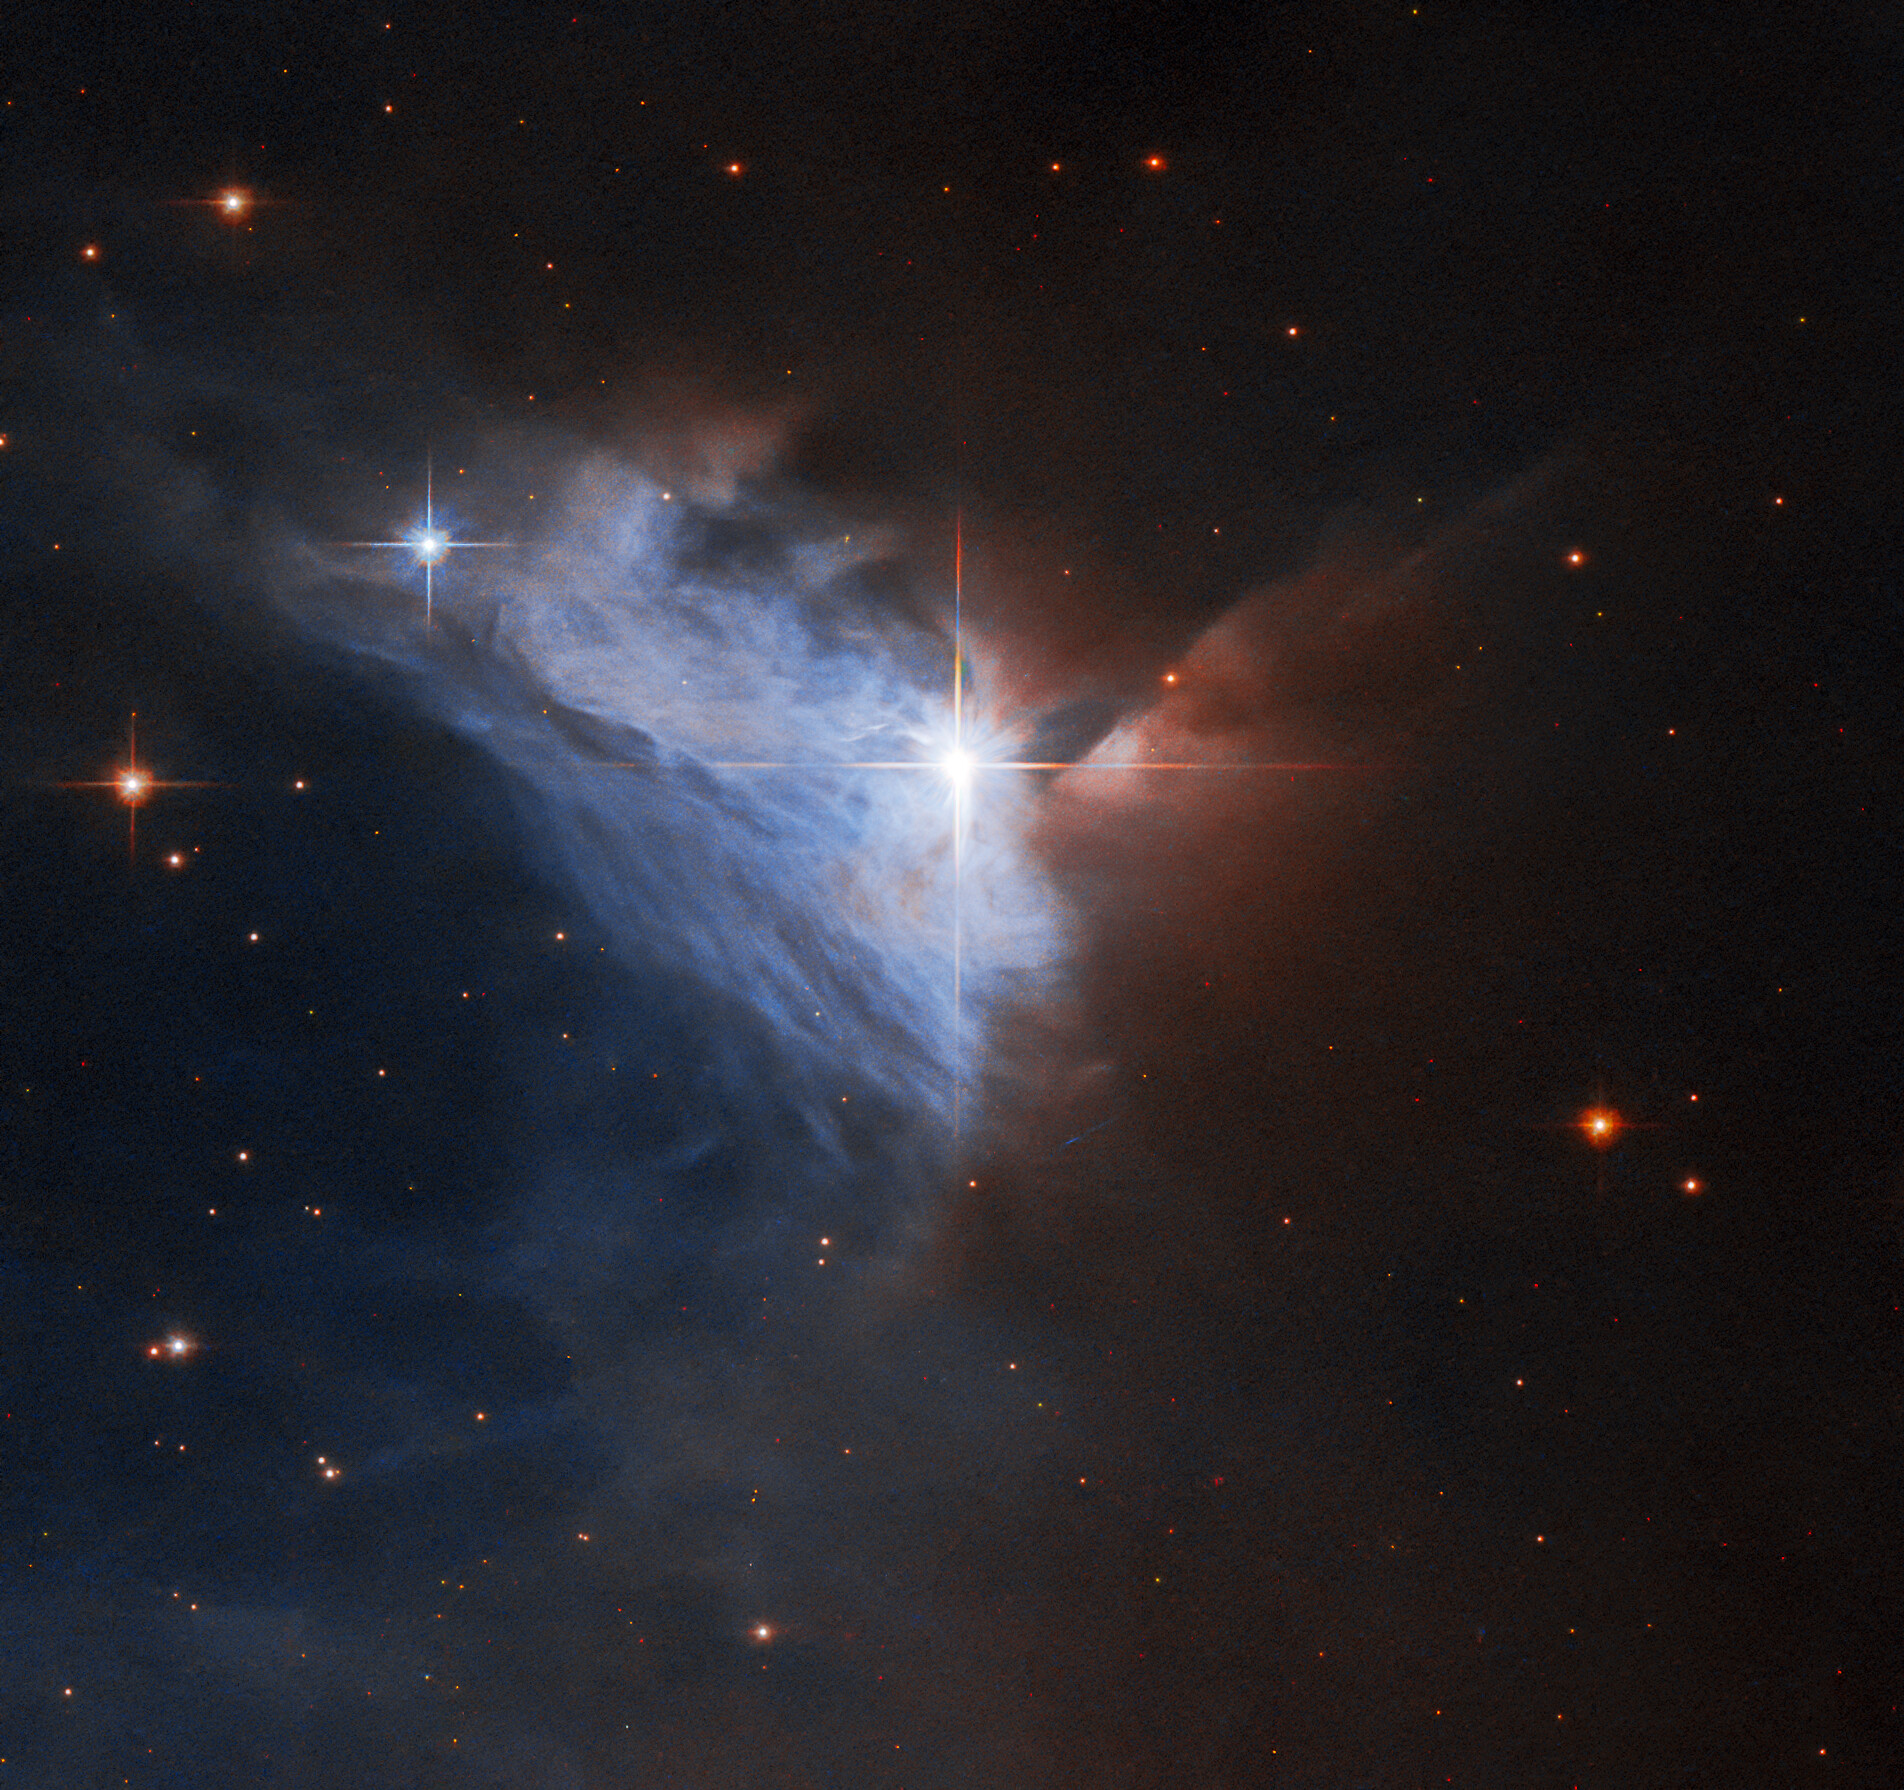 Hubble Spots a Cosmic Cloud’s Silver Lining